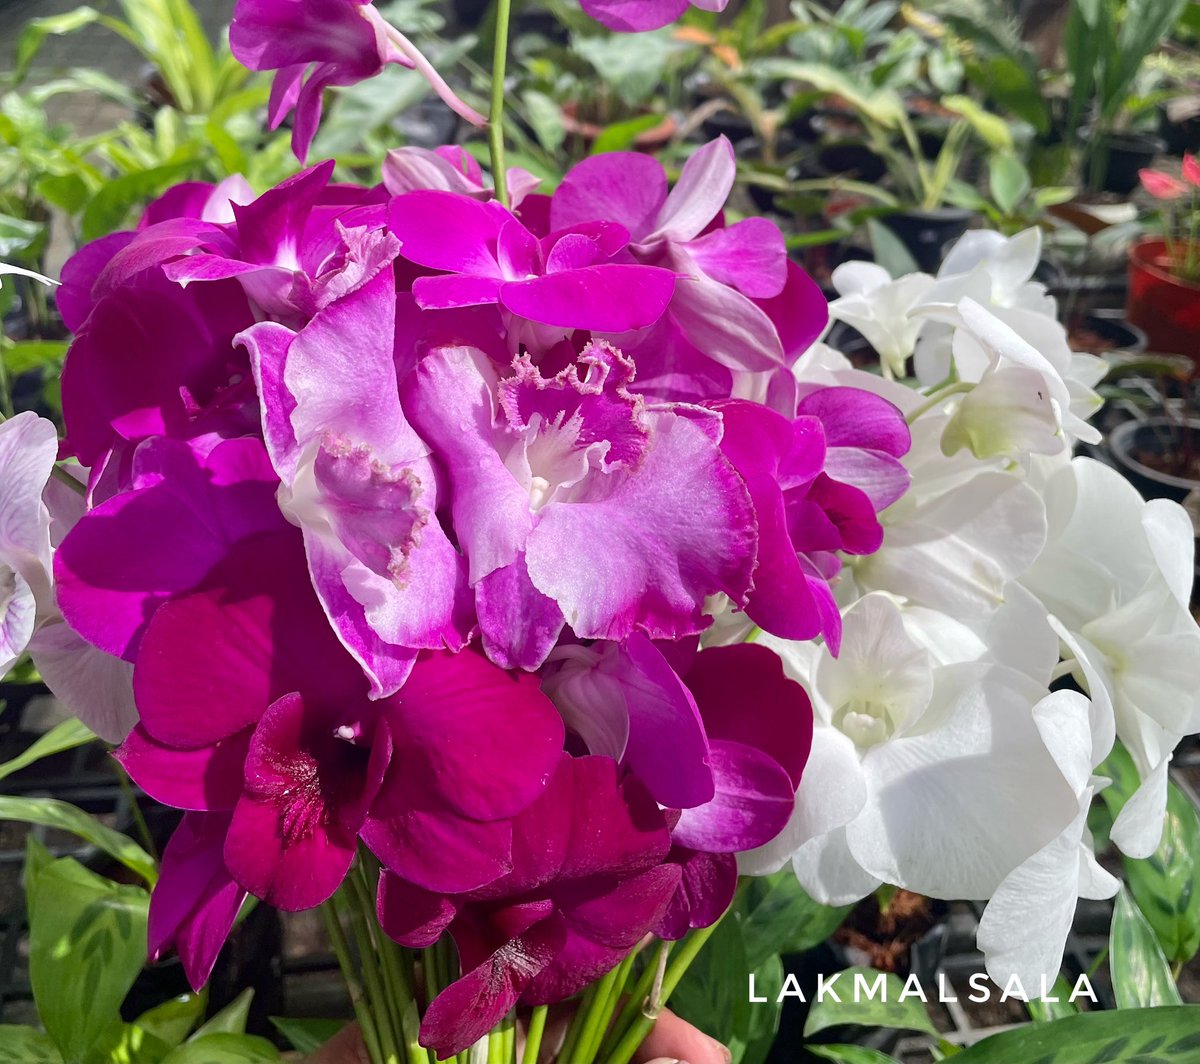 Available cut flowers at Lakmalsala - Colombo 4
#ලක්මල්සල #lakmaluyana #lakmalsala #floralarrangments #cutflowers #orchids